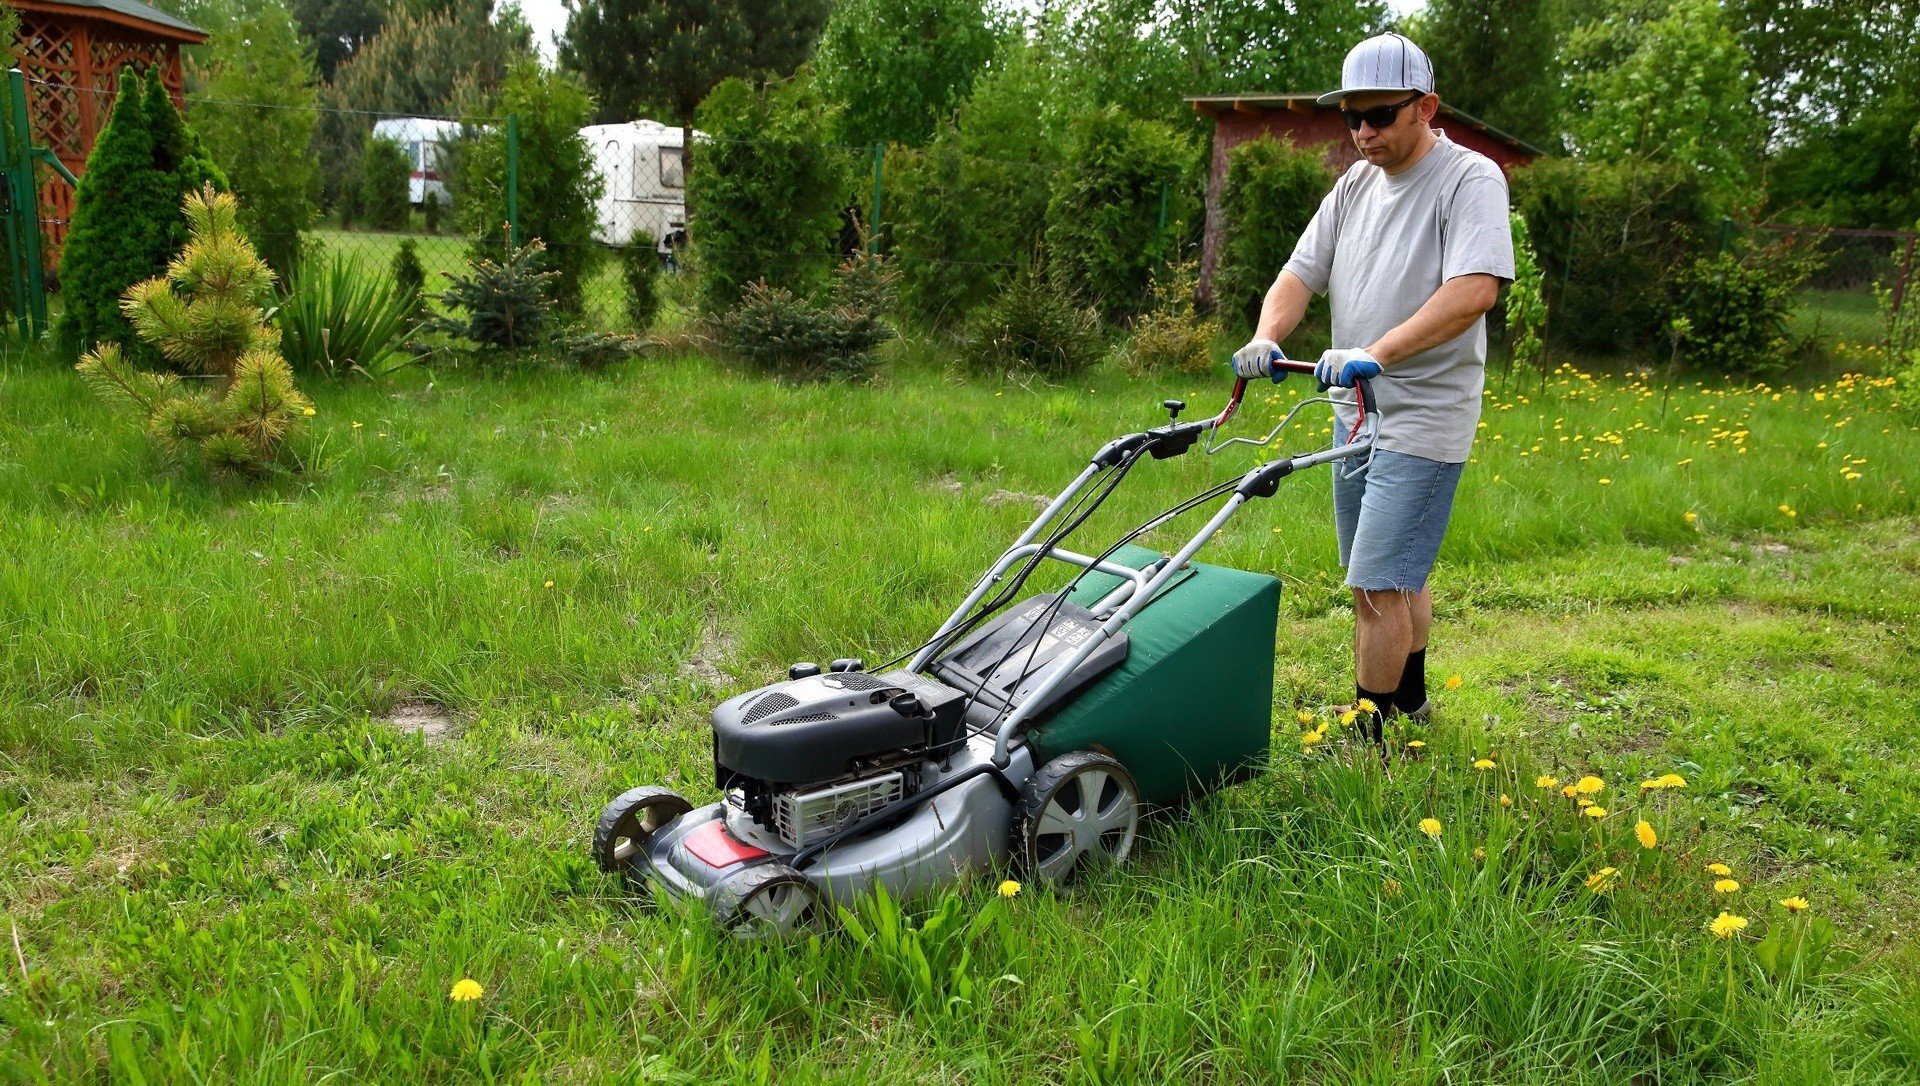 Koszenie trawy bez błędów! Jak często kosić trawnik i jak wysoko? Czy można  kosić mokrą trawę? Sprawdź, o co zadbać, aby mieć piękny trawnik | RegioDom